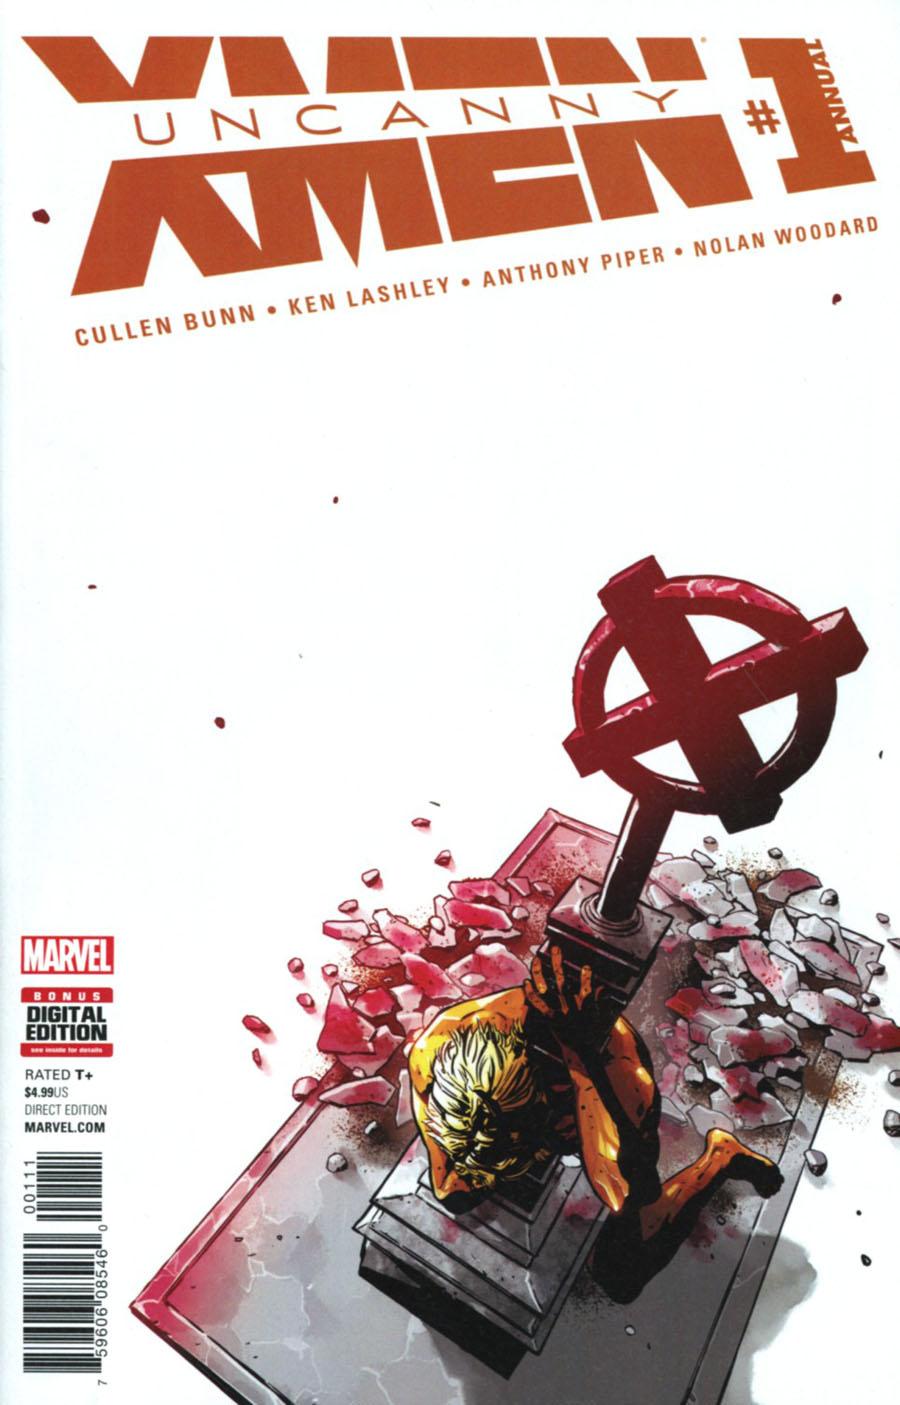 Uncanny X-Men Vol. 4 Annual #1